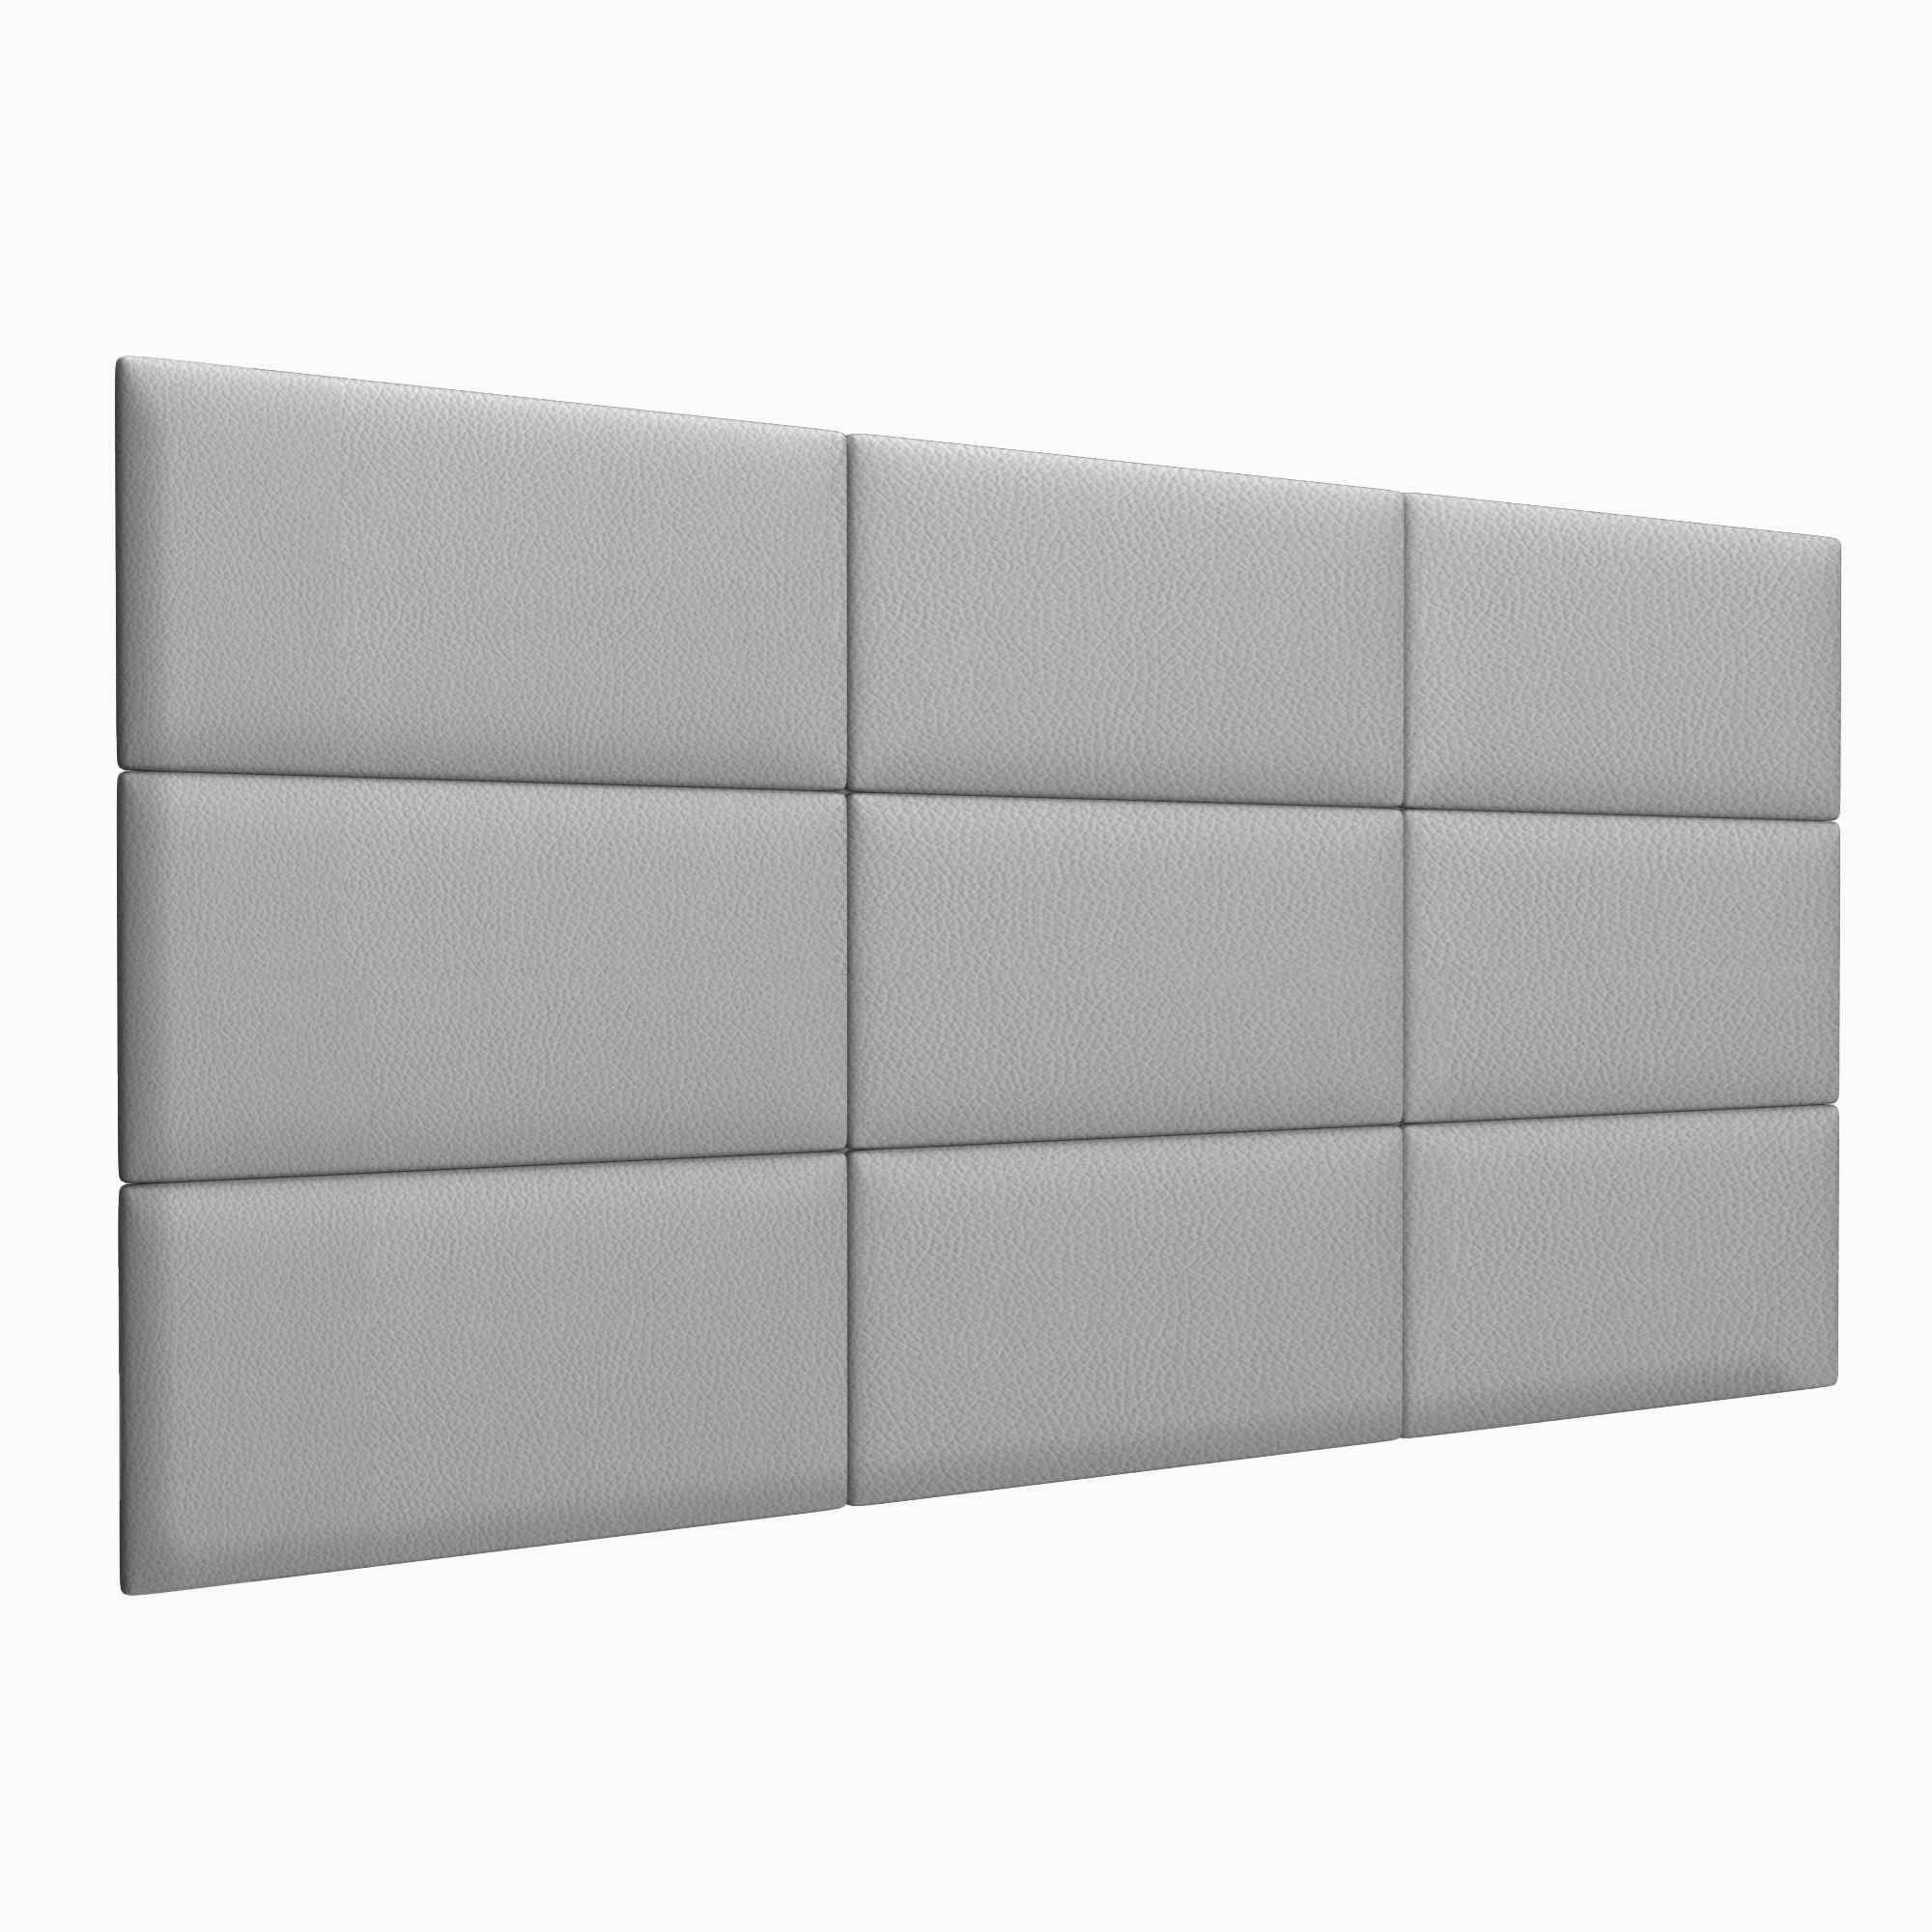 Мягкие стеновые панели Eco Leather Grey 30х60 см 2 шт.